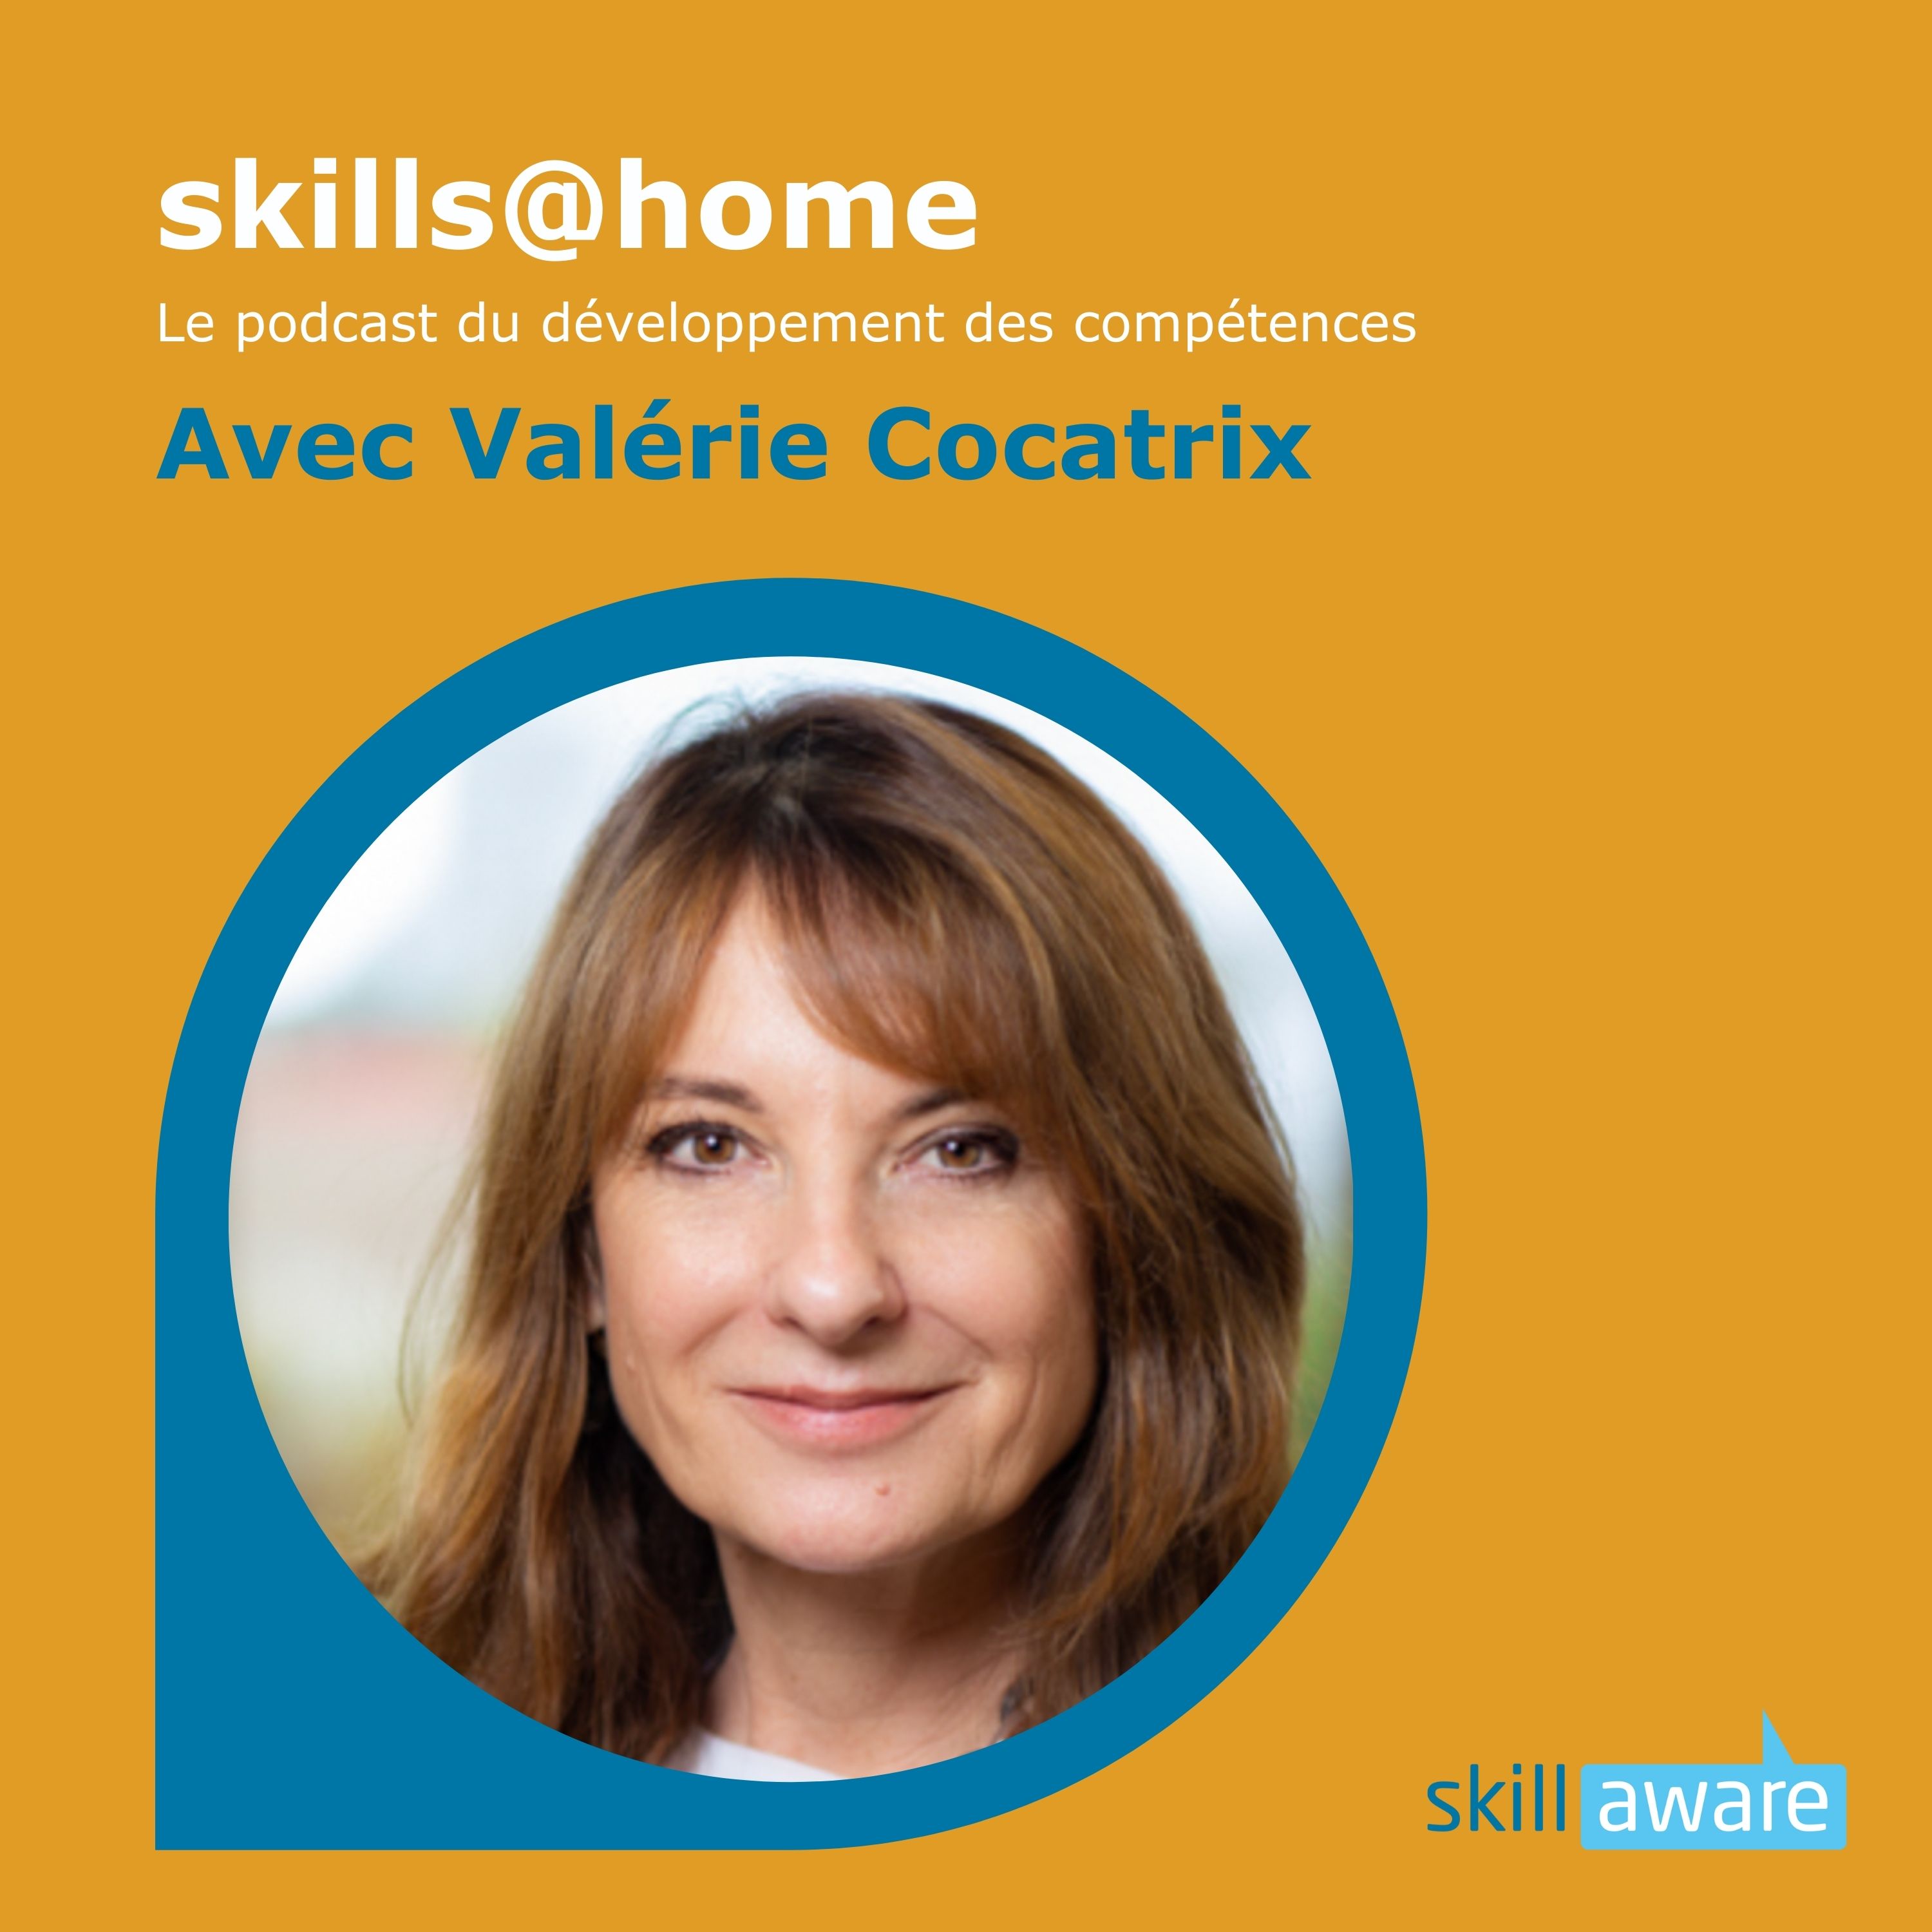 #7 - skillaware in Svizzera romanda: un colloquio con Valérie Cocatrix, consulente senior e coach